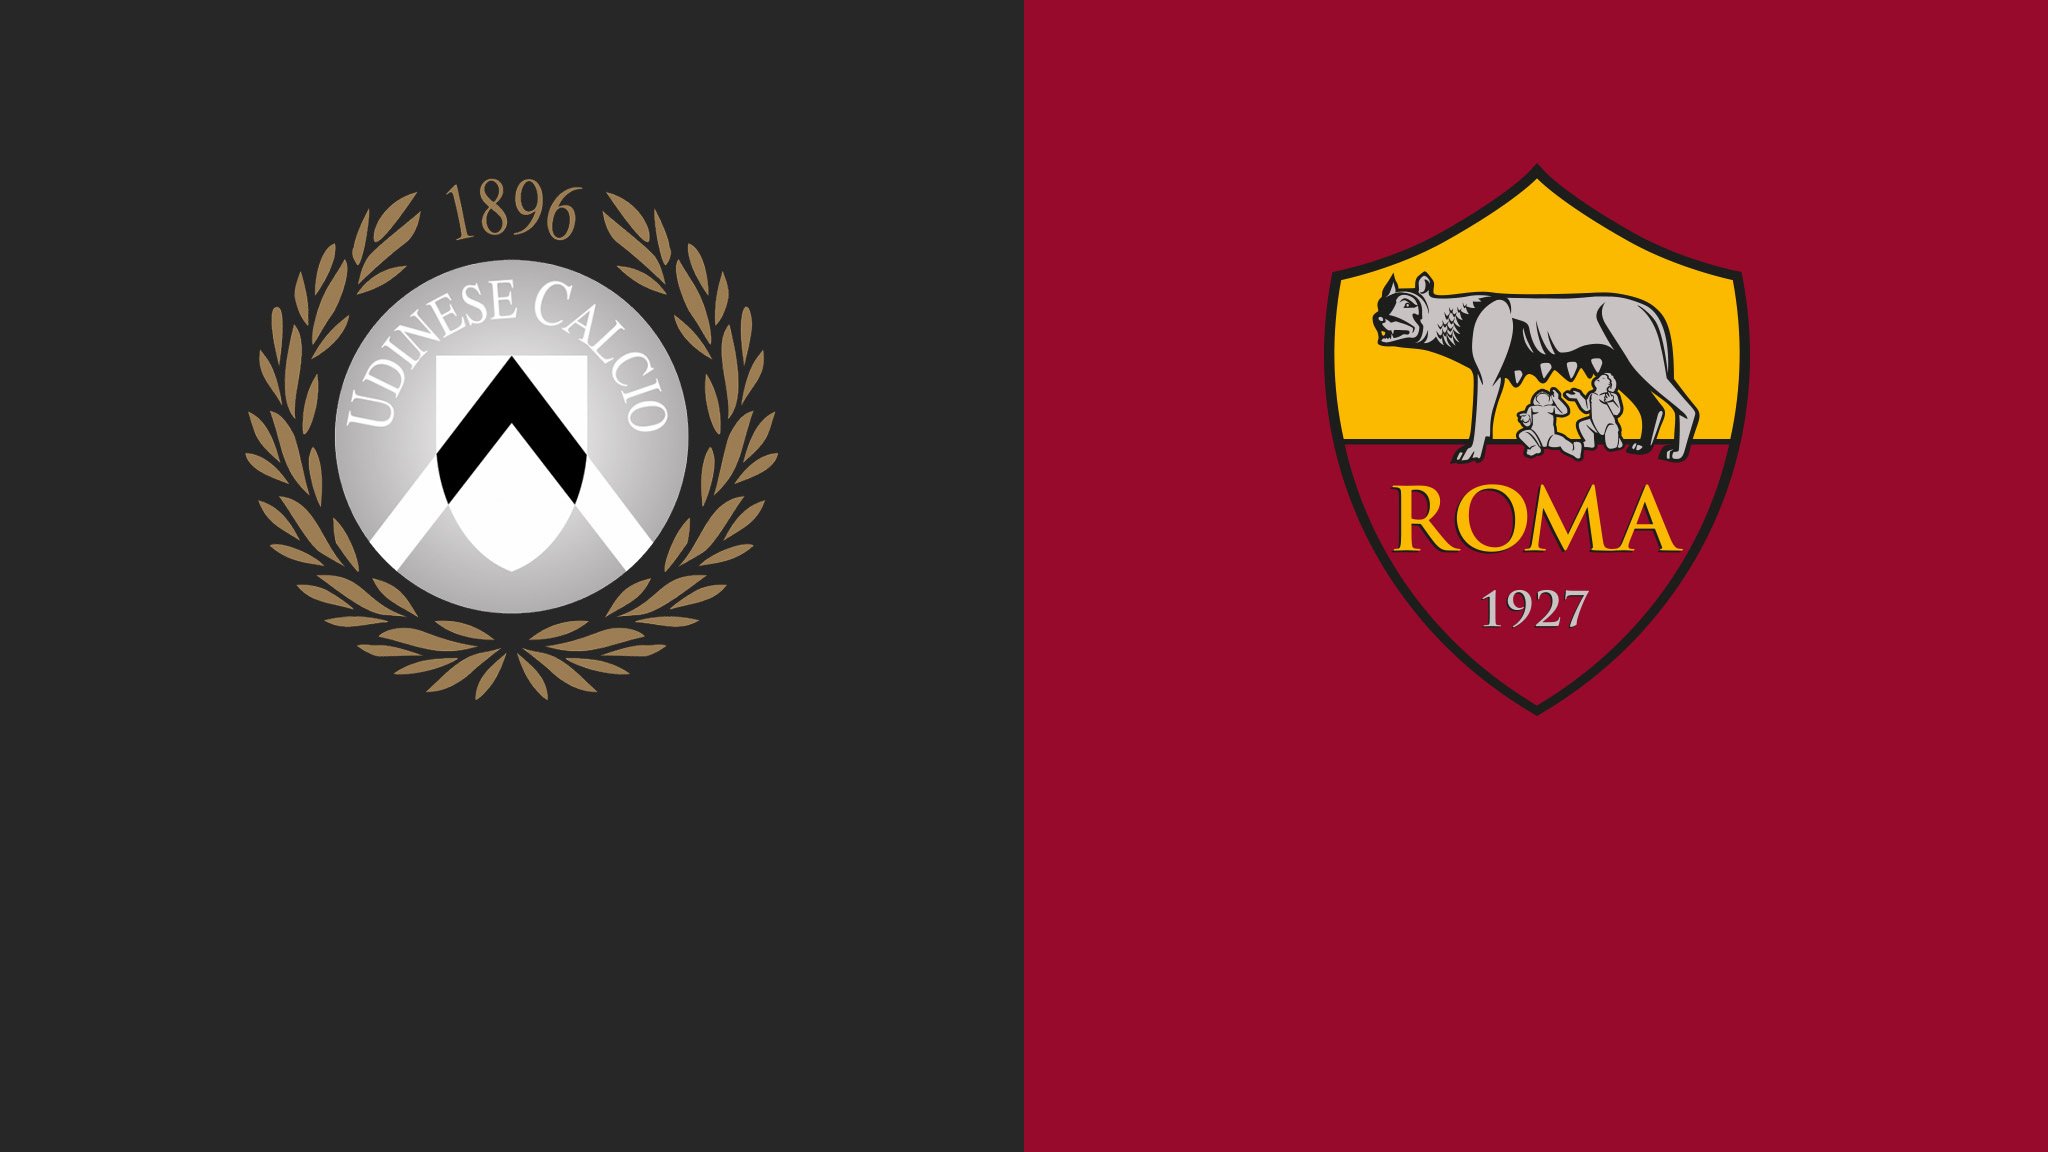 Udinese-Roma